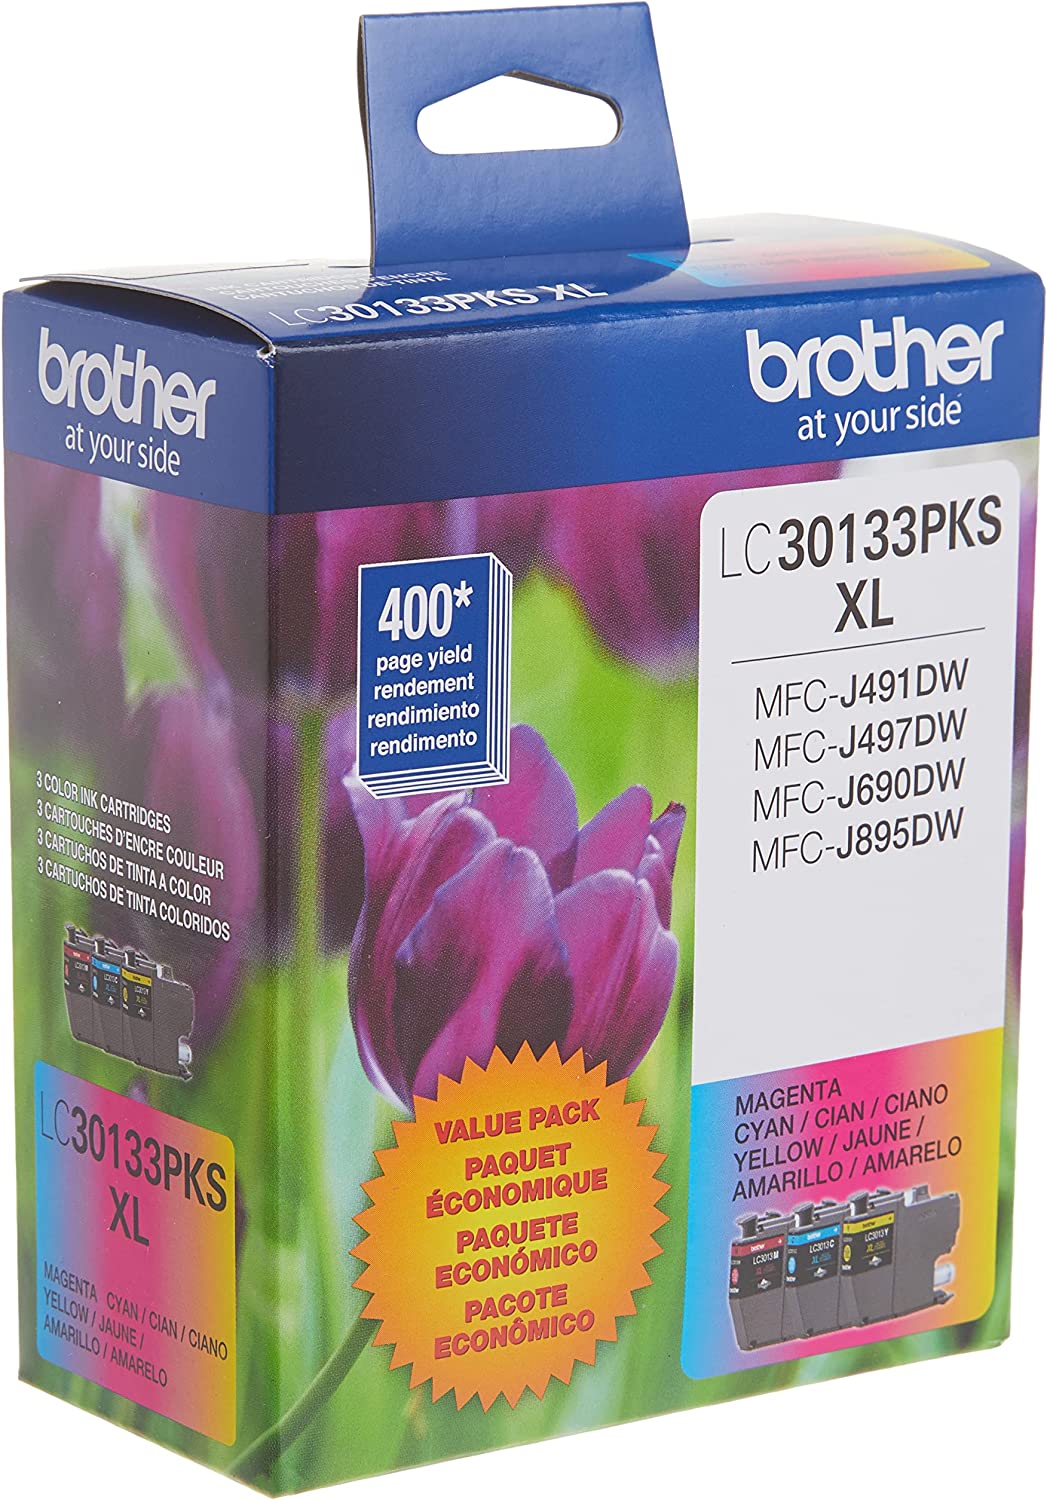 브라더 프린터 정품 LC30133PKS 3팩 대용량 컬러 잉크 카트리지, 최대 400페이지/카트리지, 시안, 마젠타 및 옐로우 포함, LC3013